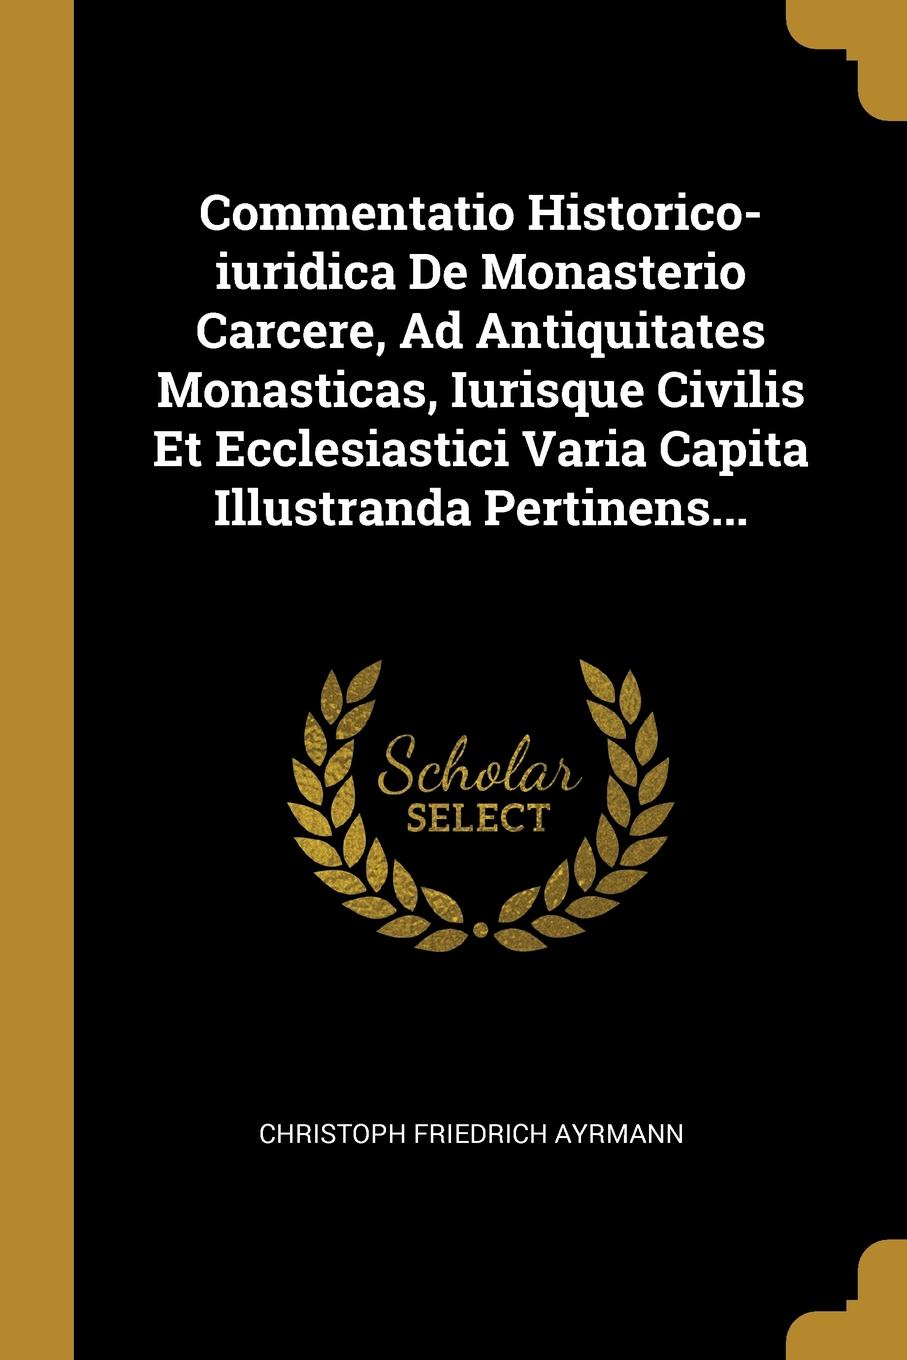 Commentatio Historico-iuridica De Monasterio Carcere, Ad Antiquitates Monasticas, Iurisque Civilis Et Ecclesiastici Varia Capita Illustranda Pertinens...